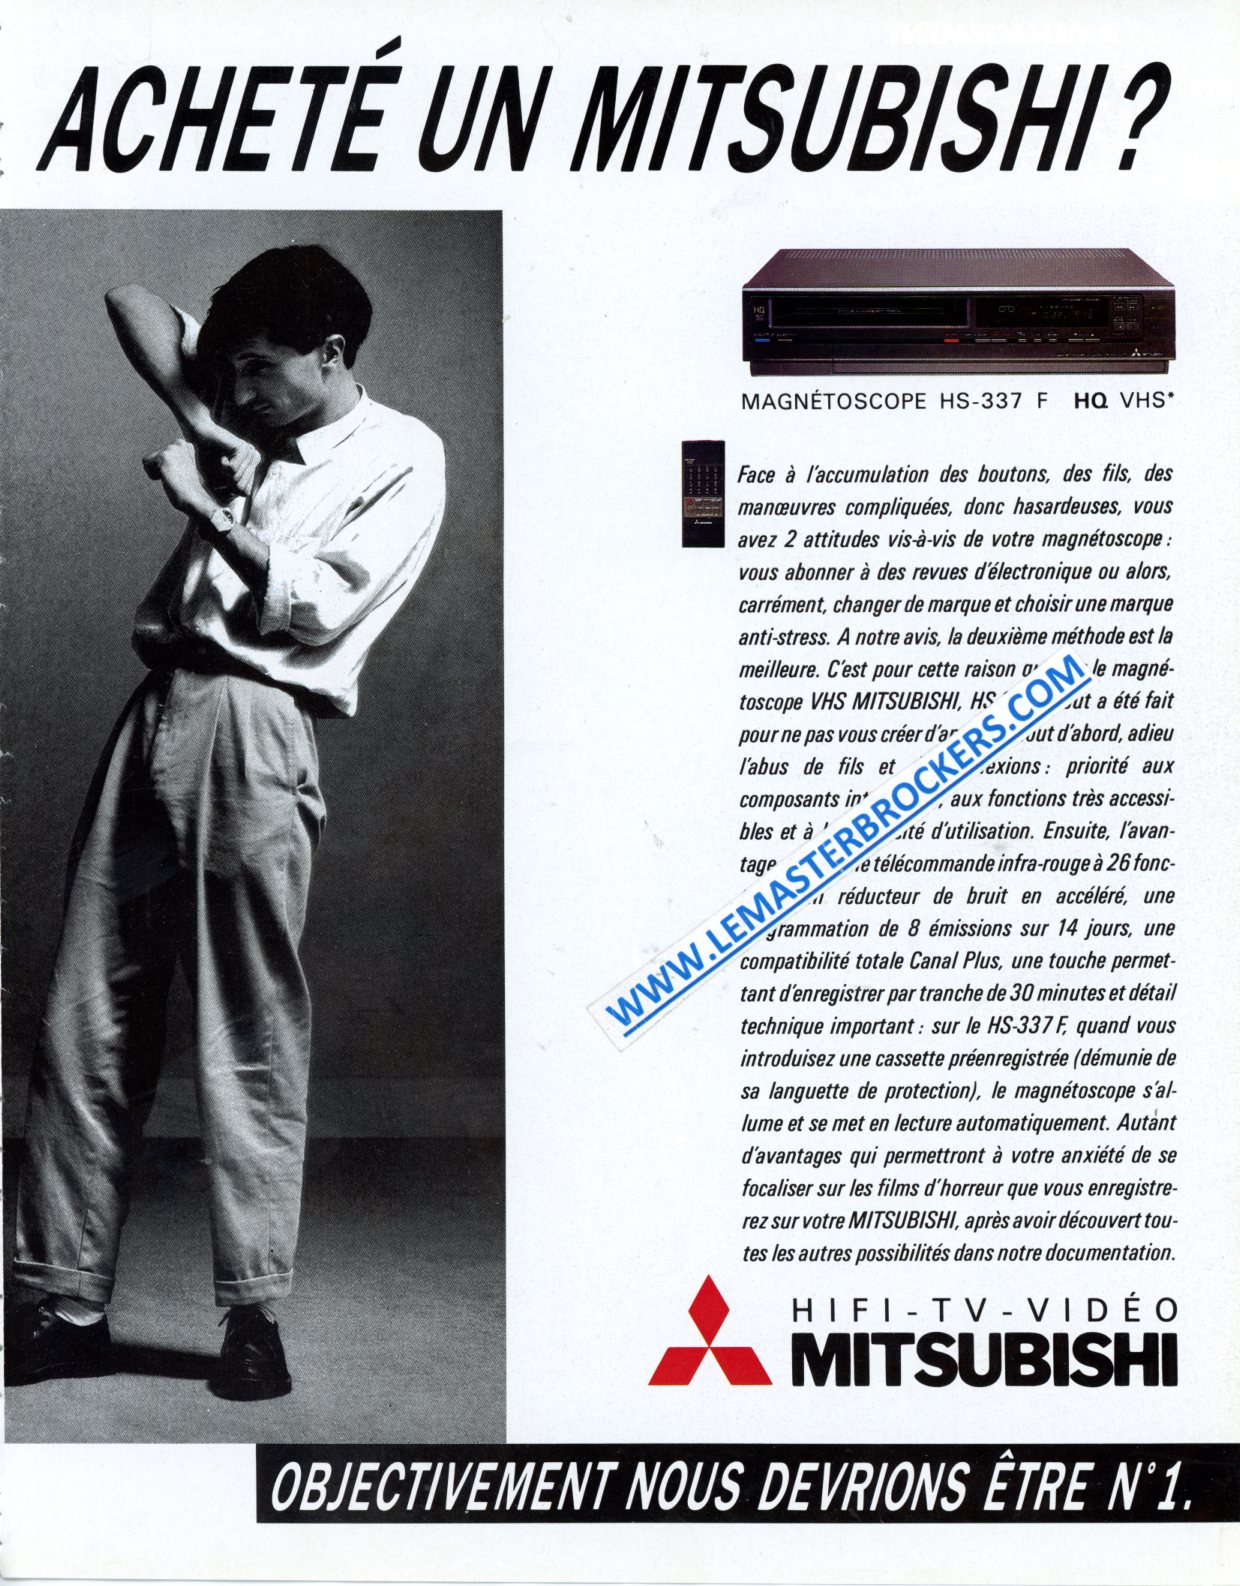 PUBLICITÉ MITSUBISHI HS-337 F HQ VHS MAGNÉTOSCOPE - ADVERTISING 1986